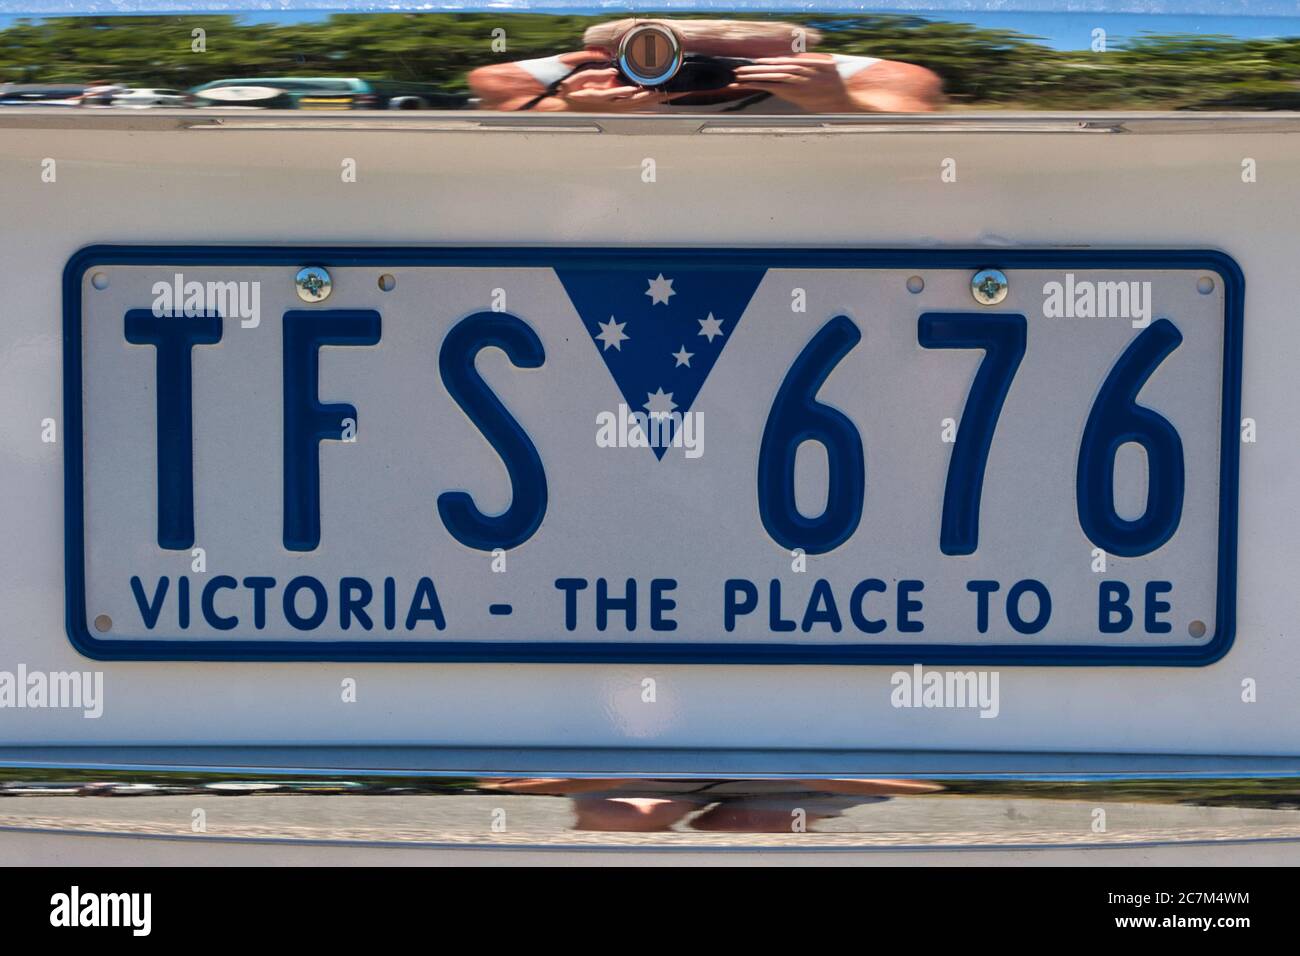 Nahaufnahme eines Kfz-Kennzeichen mit dem Slogan Victoria, the place to be, unter den Lizenznummern. Melbourne, Victoria, Australien. Stockfoto